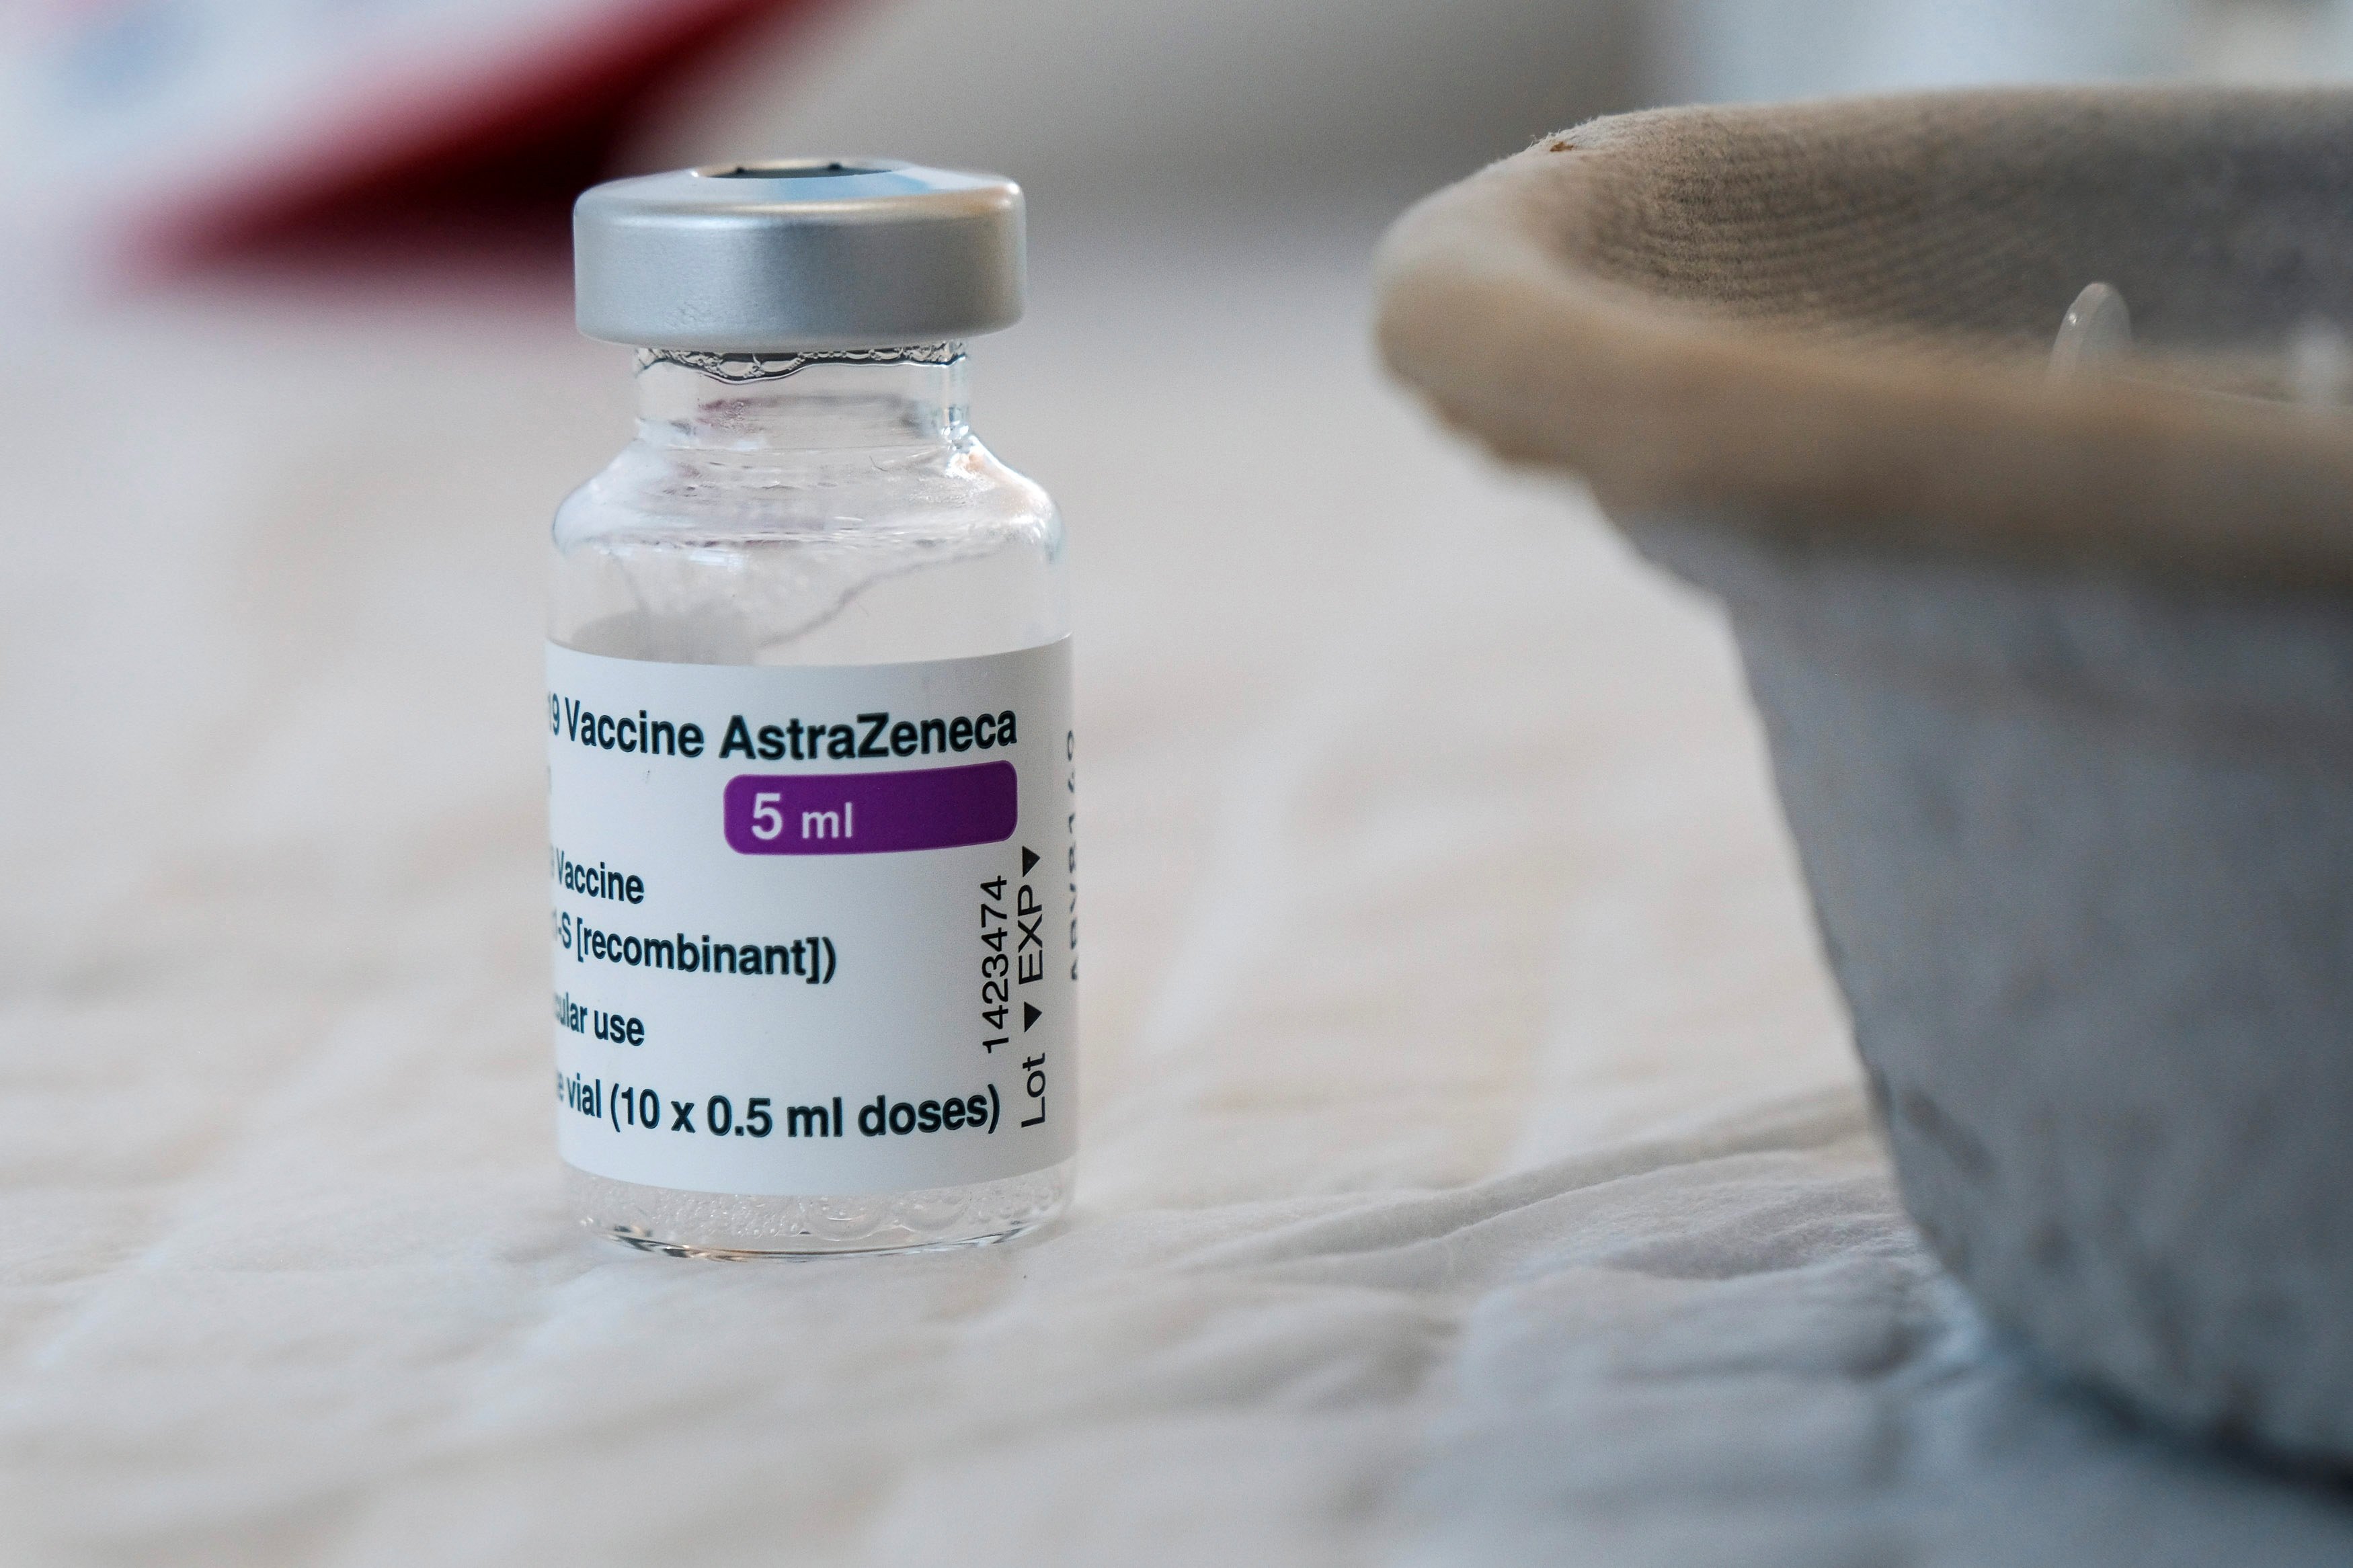 Europa insiste: no hay evidencia de que AstraZeneca haya provocado trombos